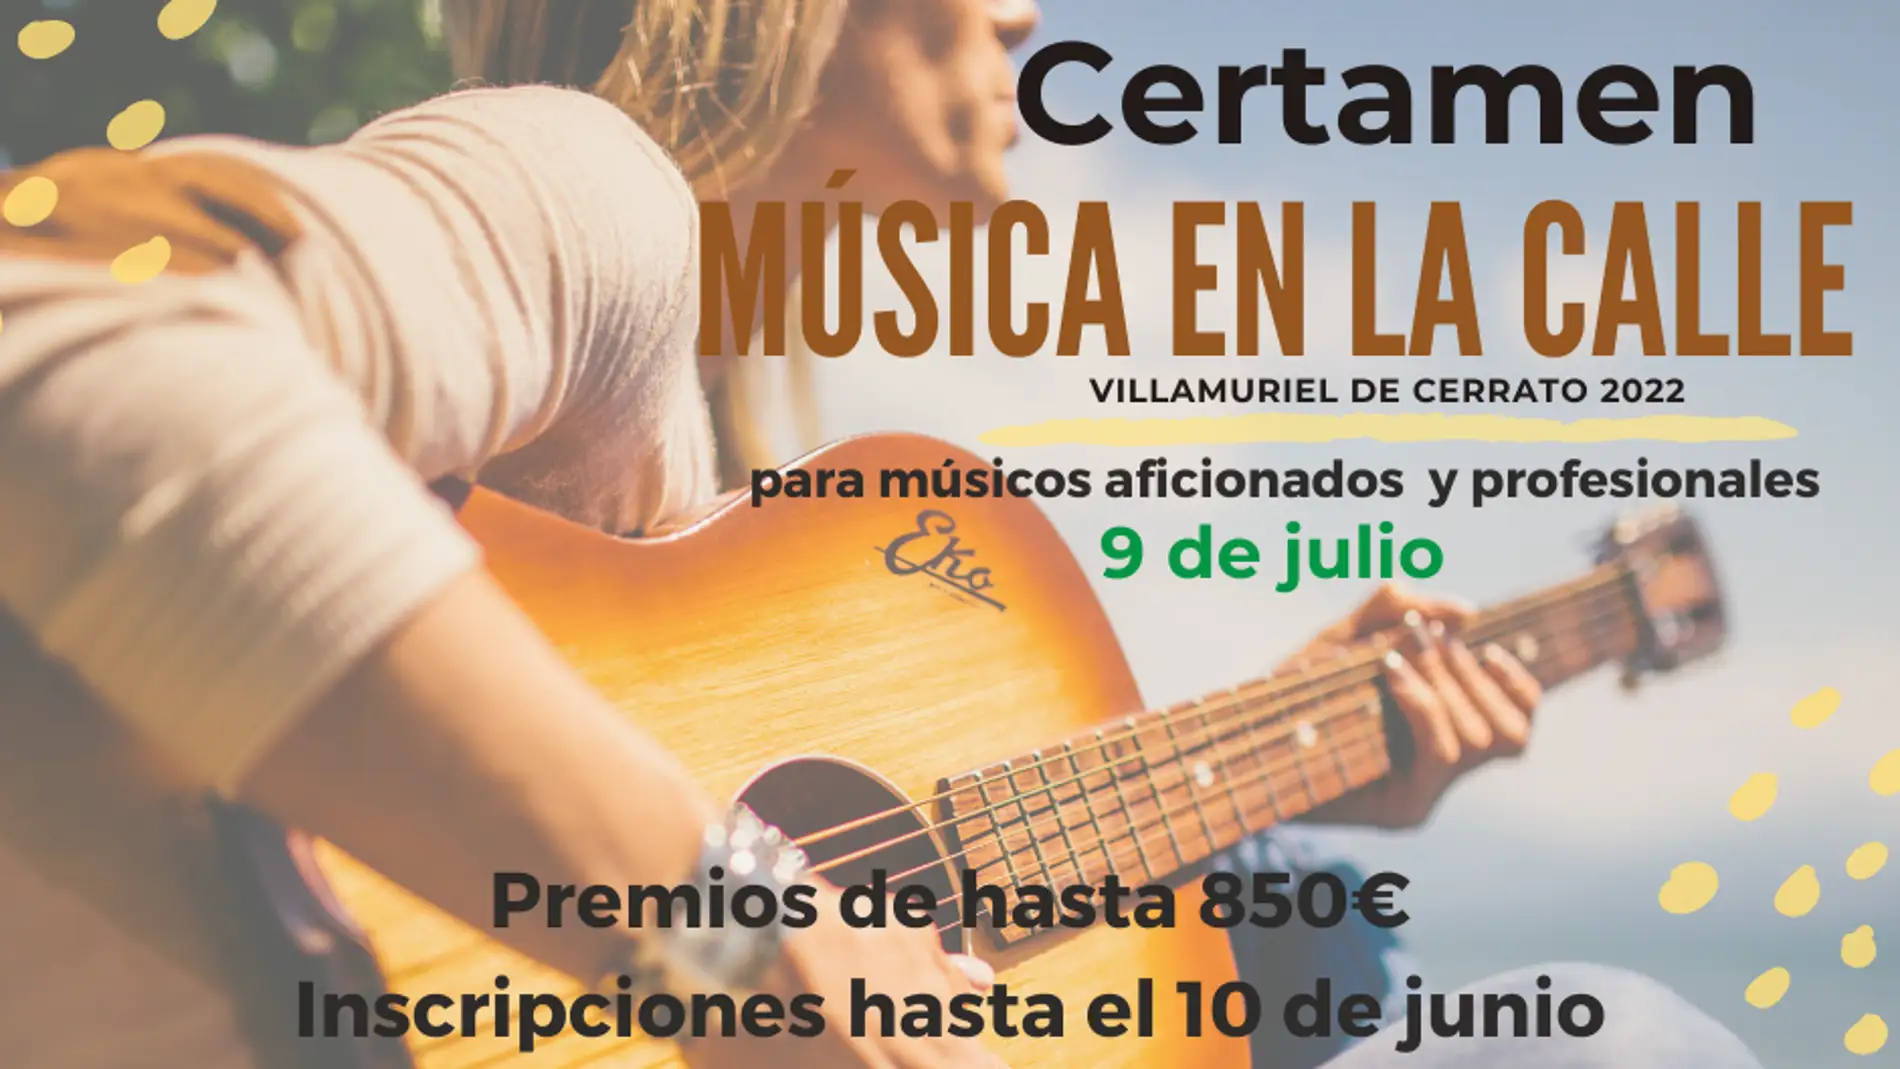 La "Música en la Calle" vuelve a Villamuriel